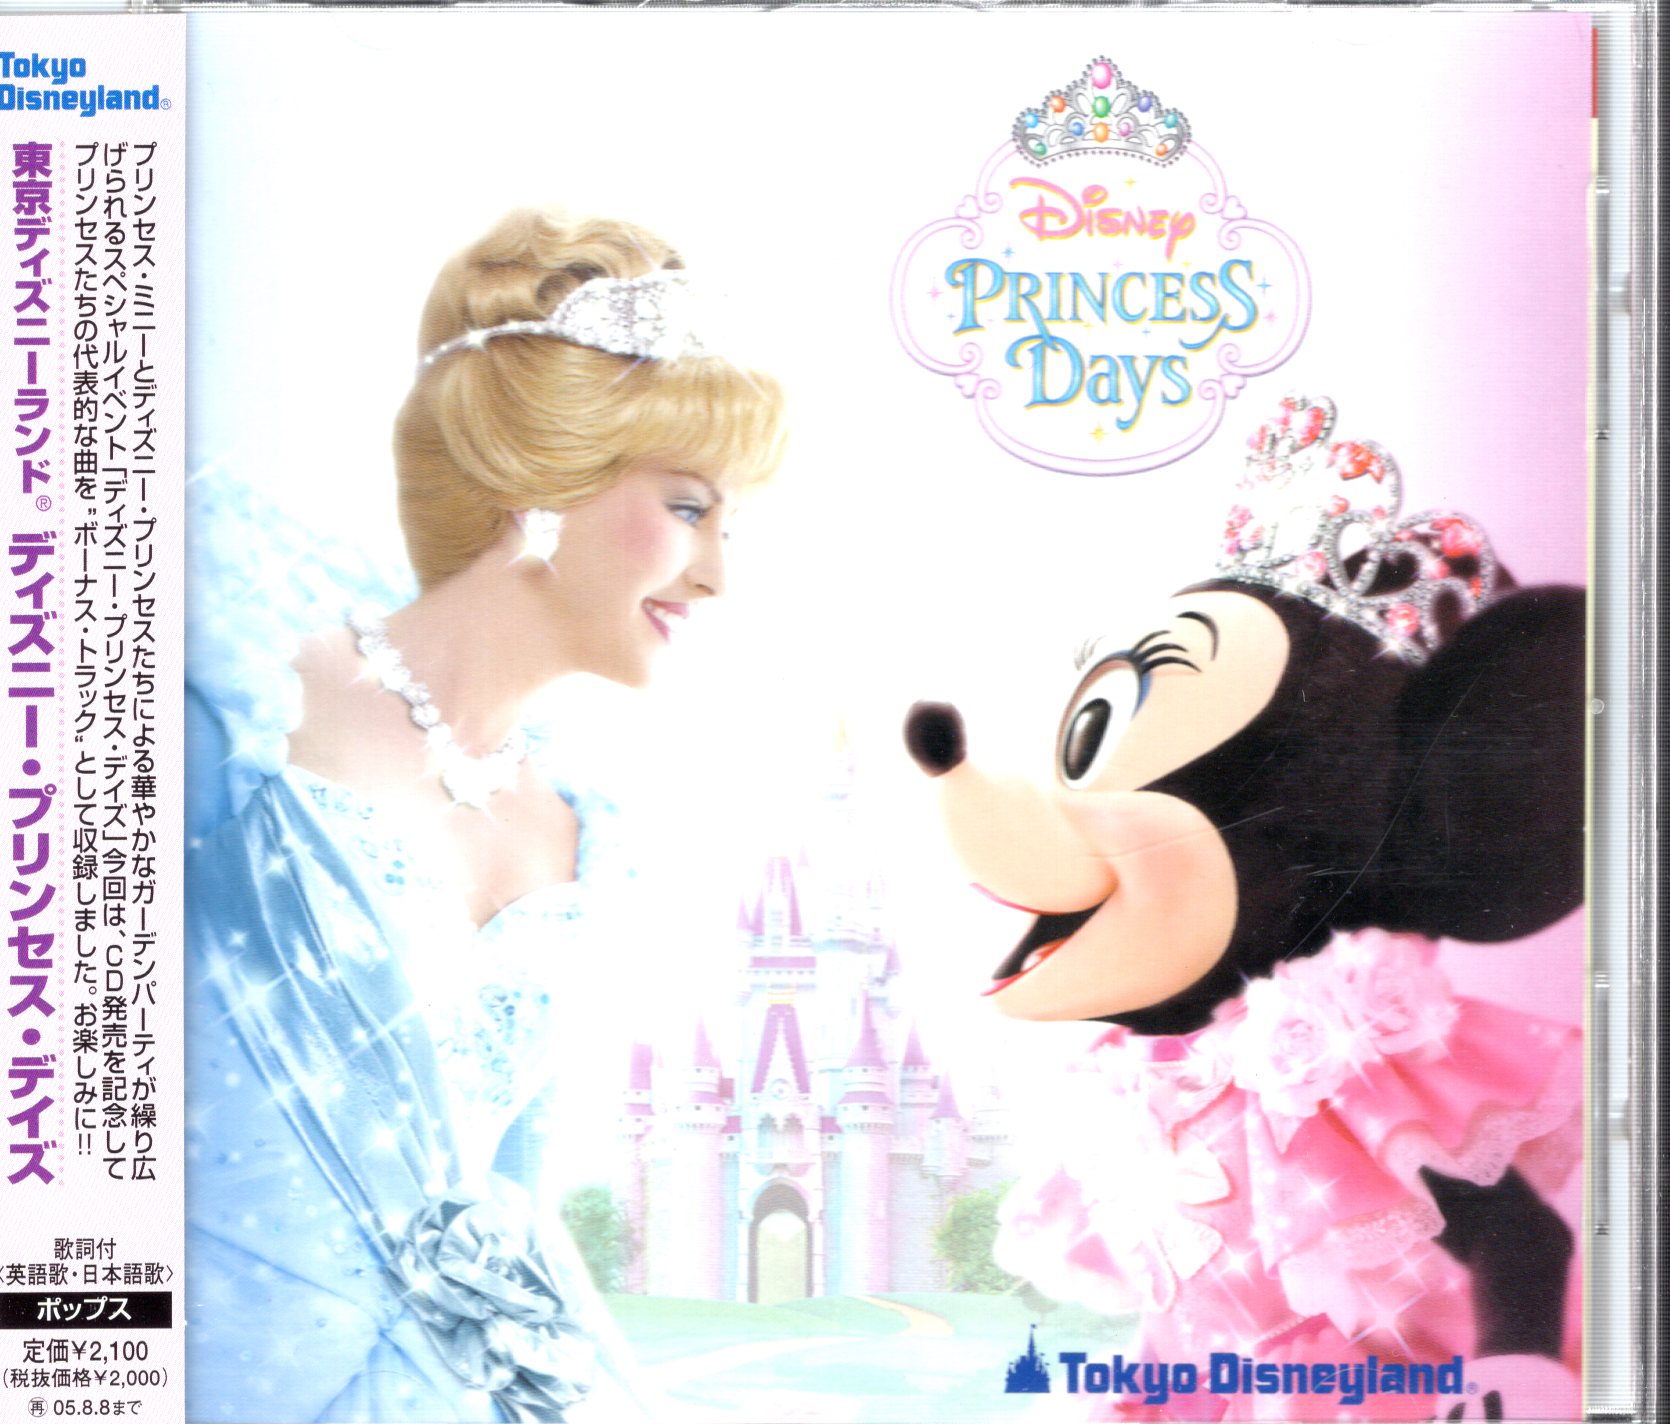 Cd Tokyo Disneyland Disney Princess Days Mandarake Online Shop